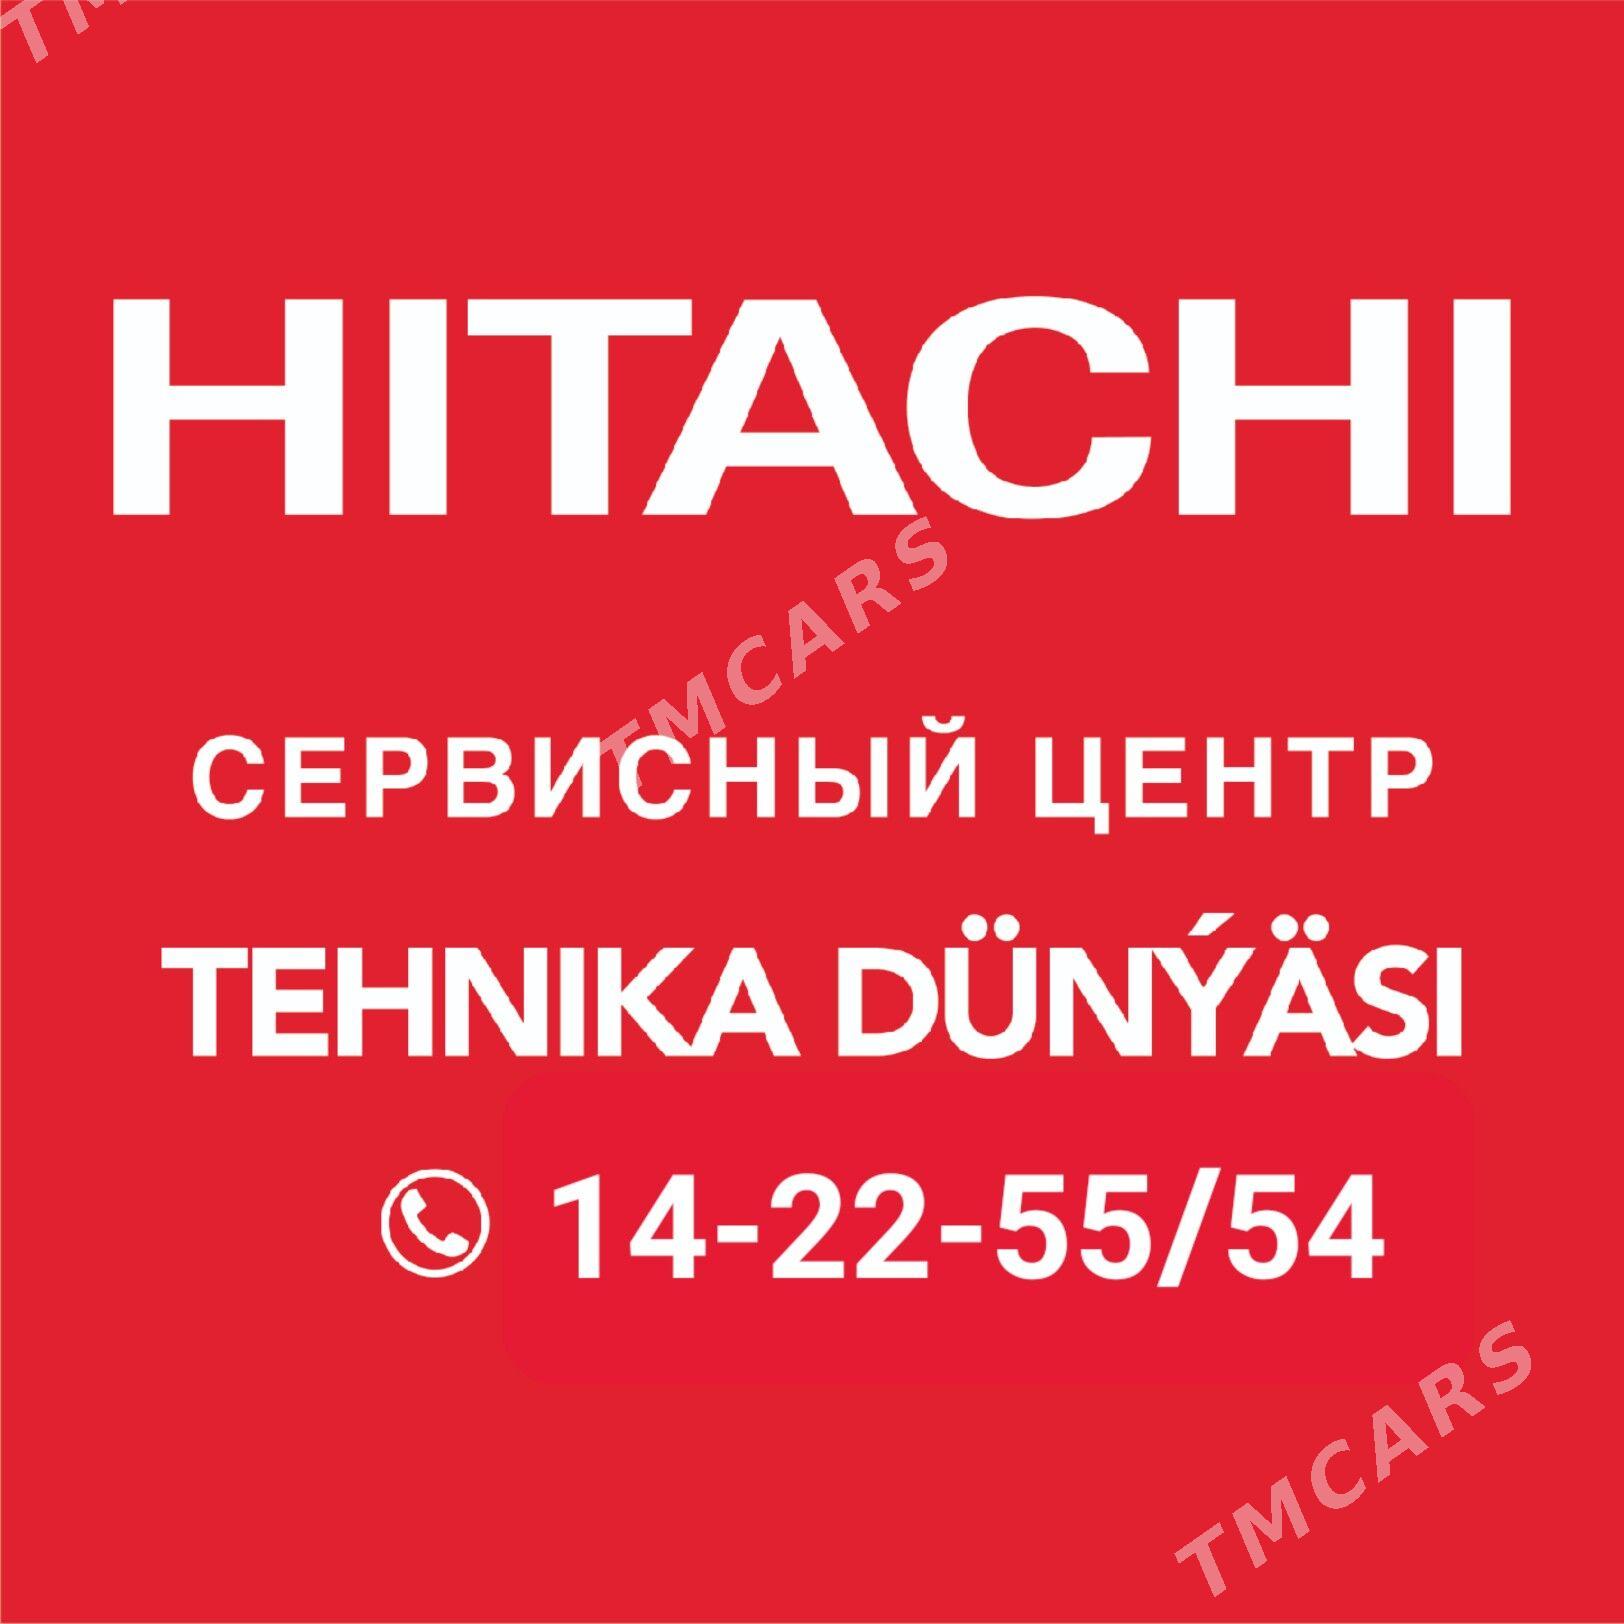 Oфициальный магазин и сервис - Aşgabat - img 2